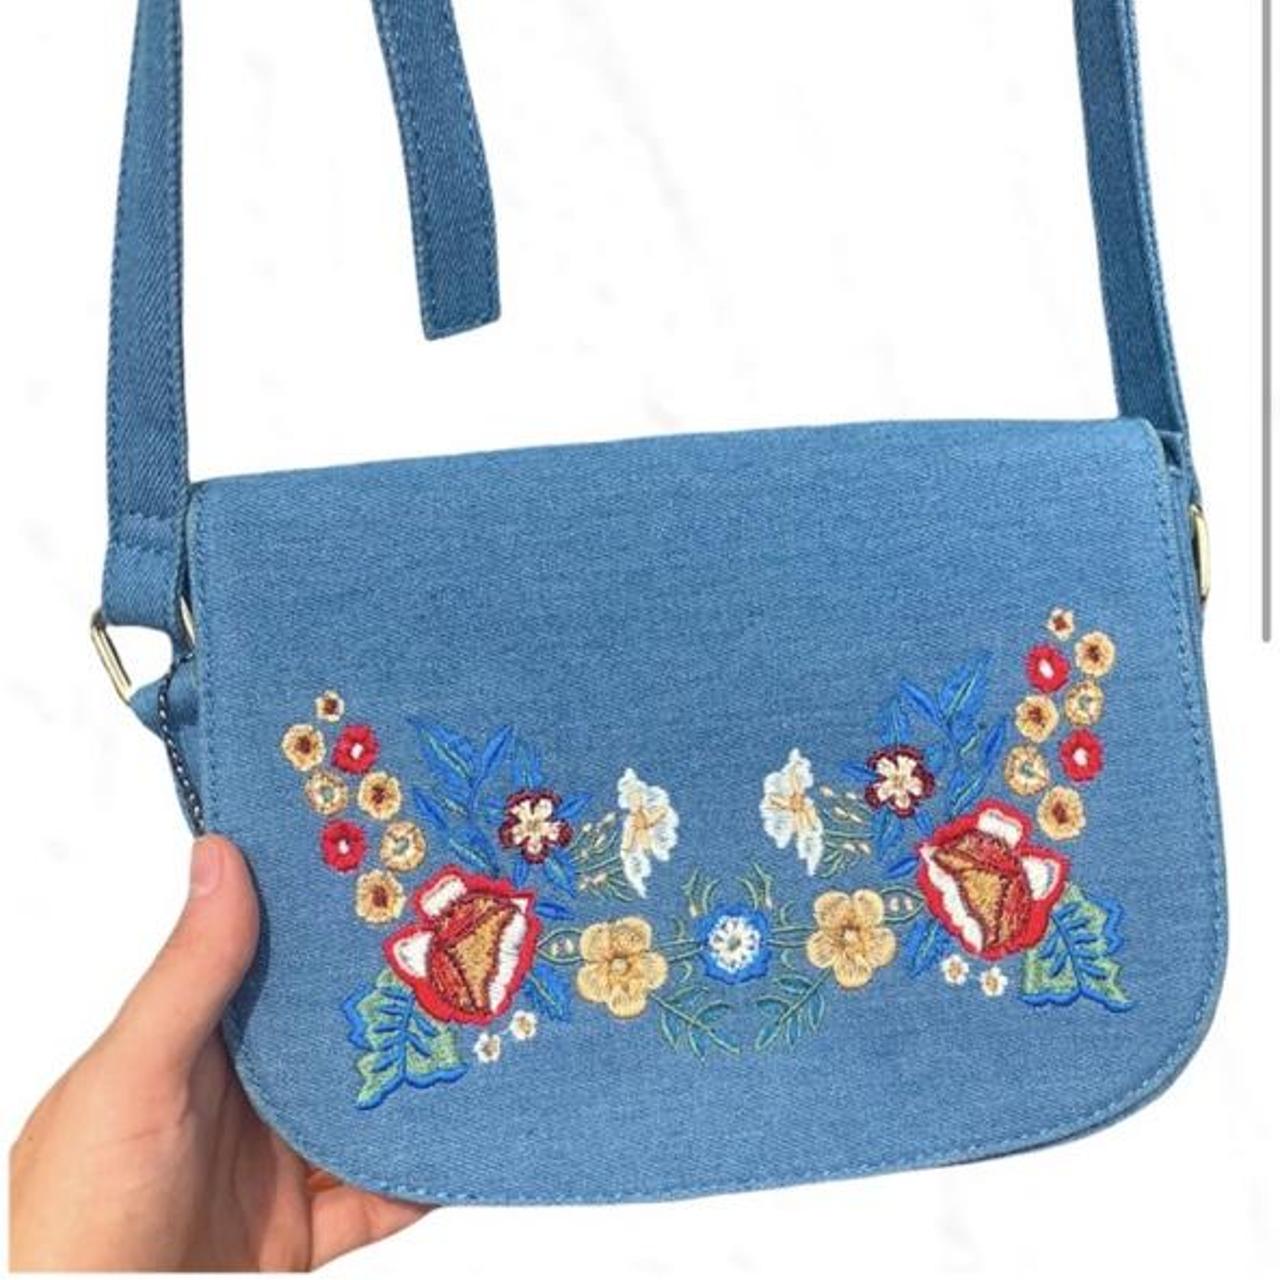 Vintage #90s Denim Floral Crossbody Bag with - Depop